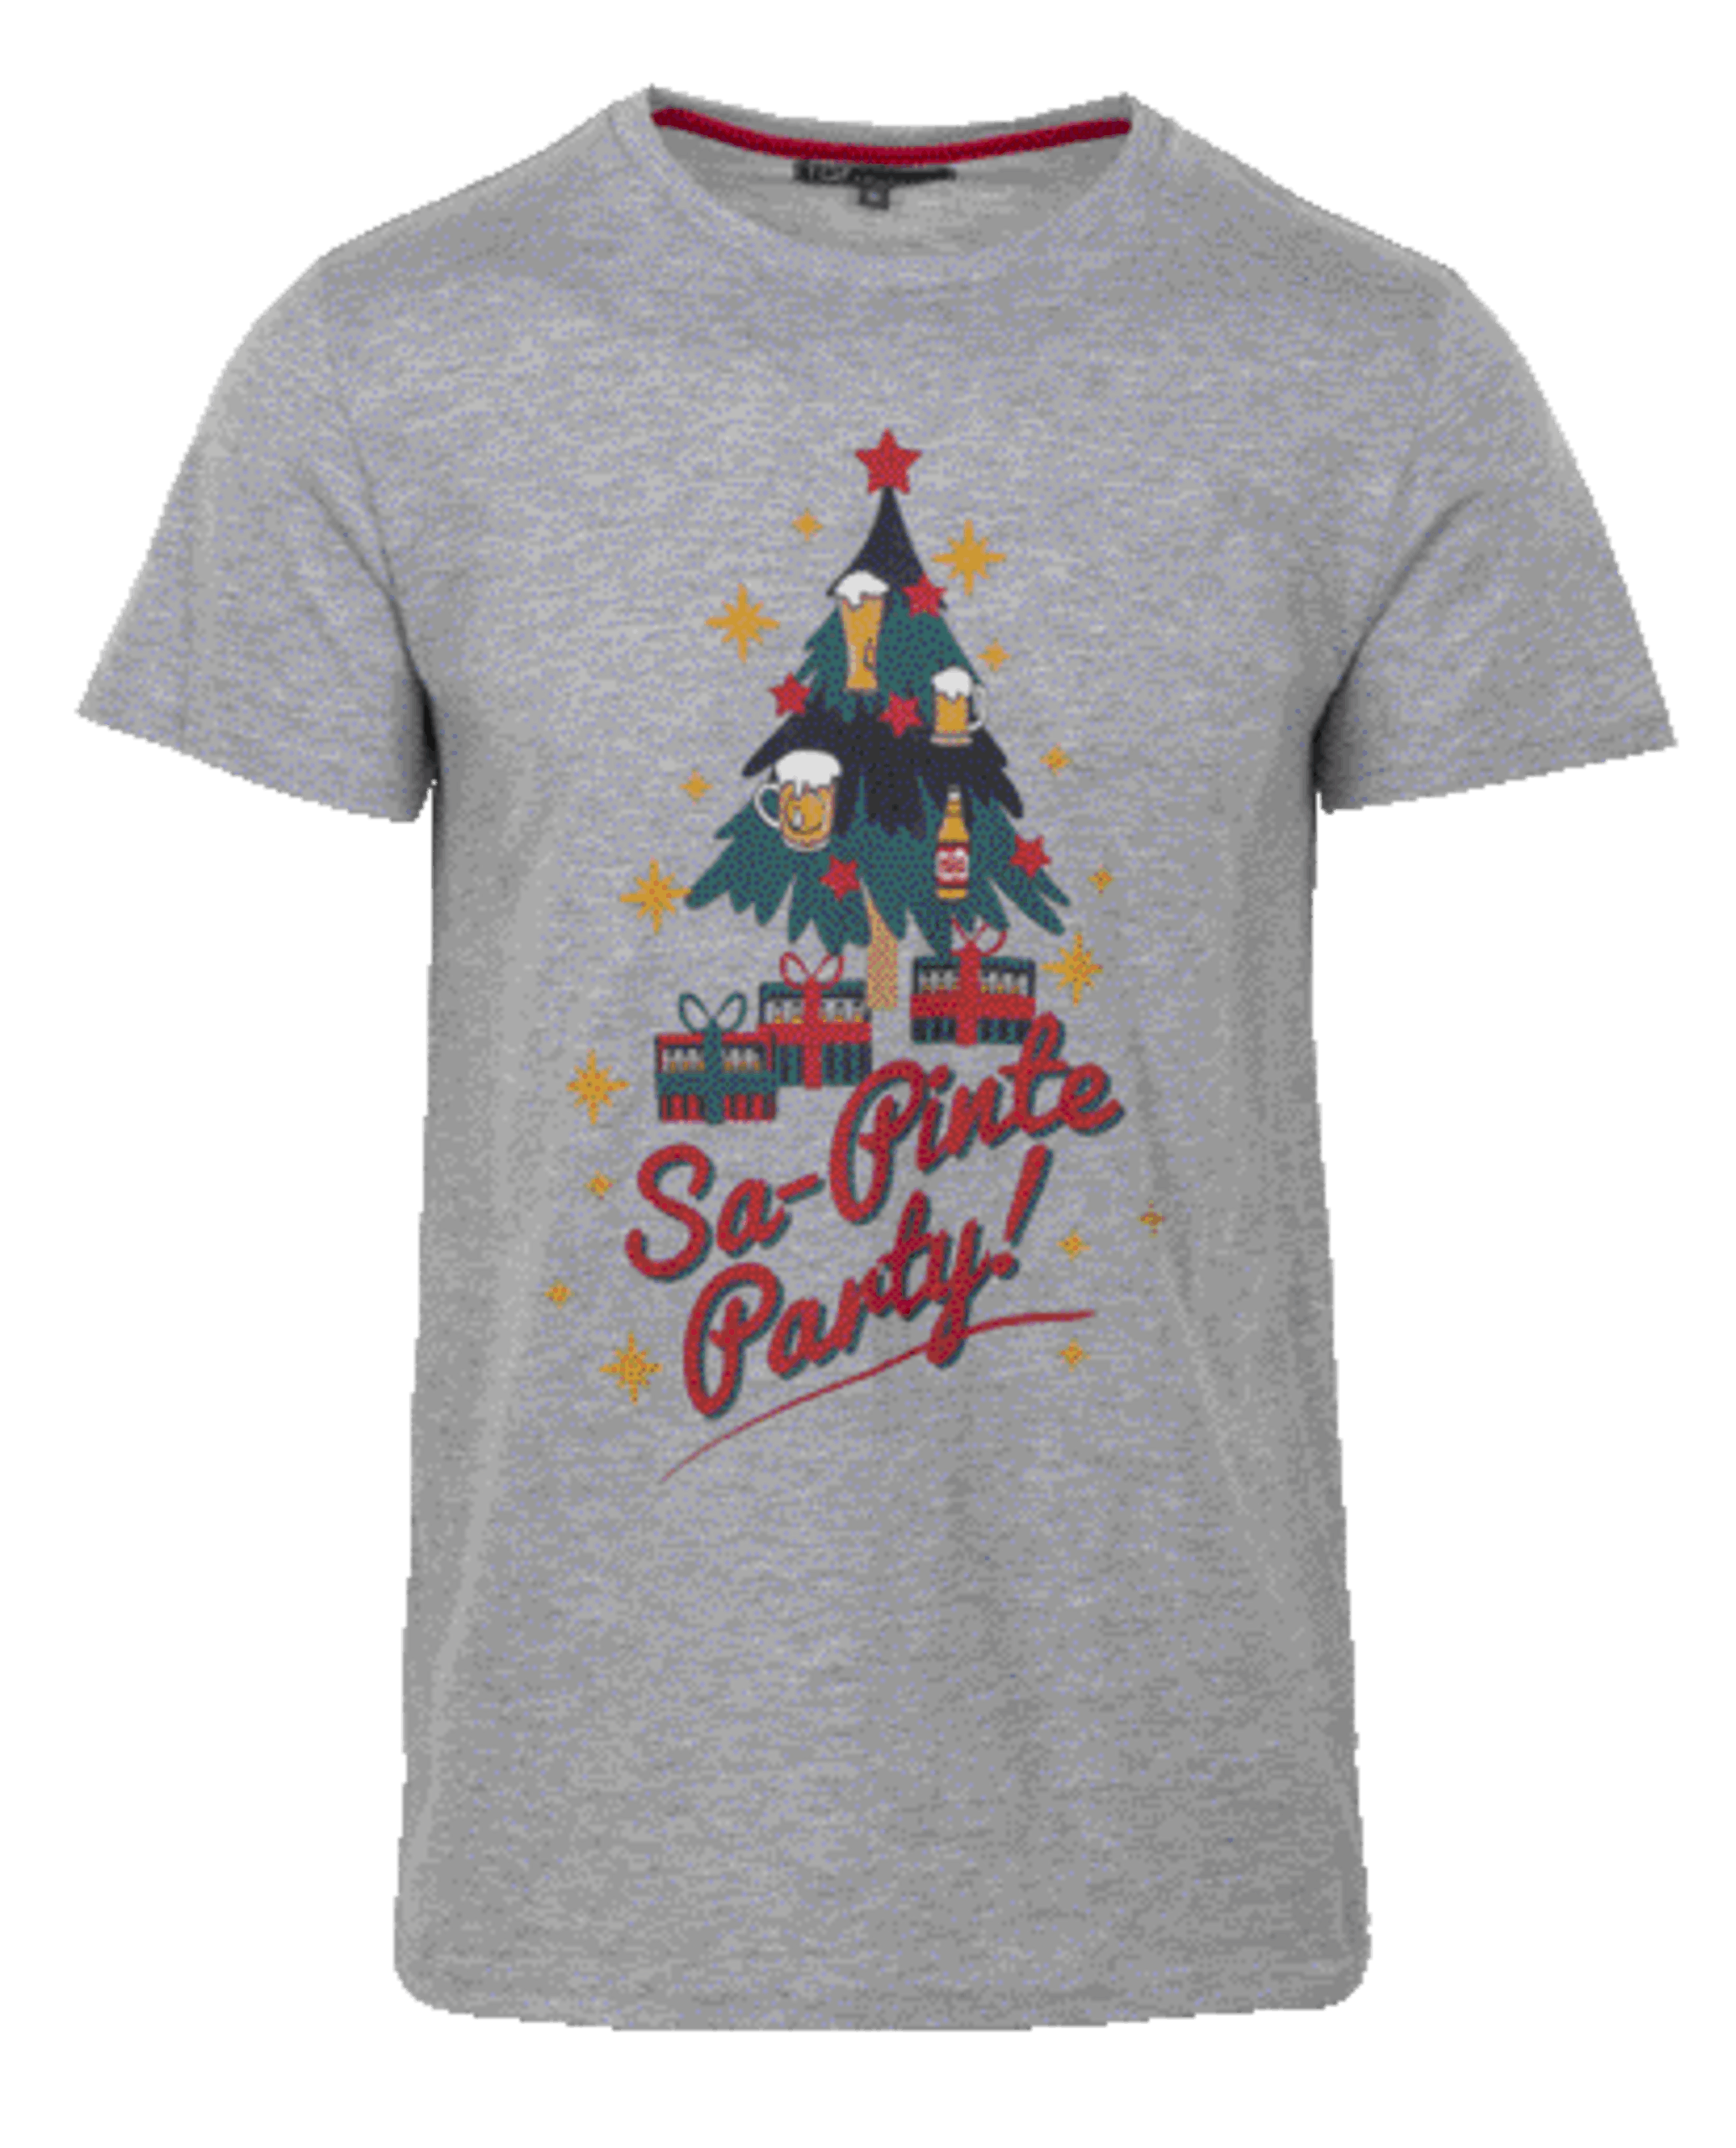 T-shirt "sa-pinte Party"